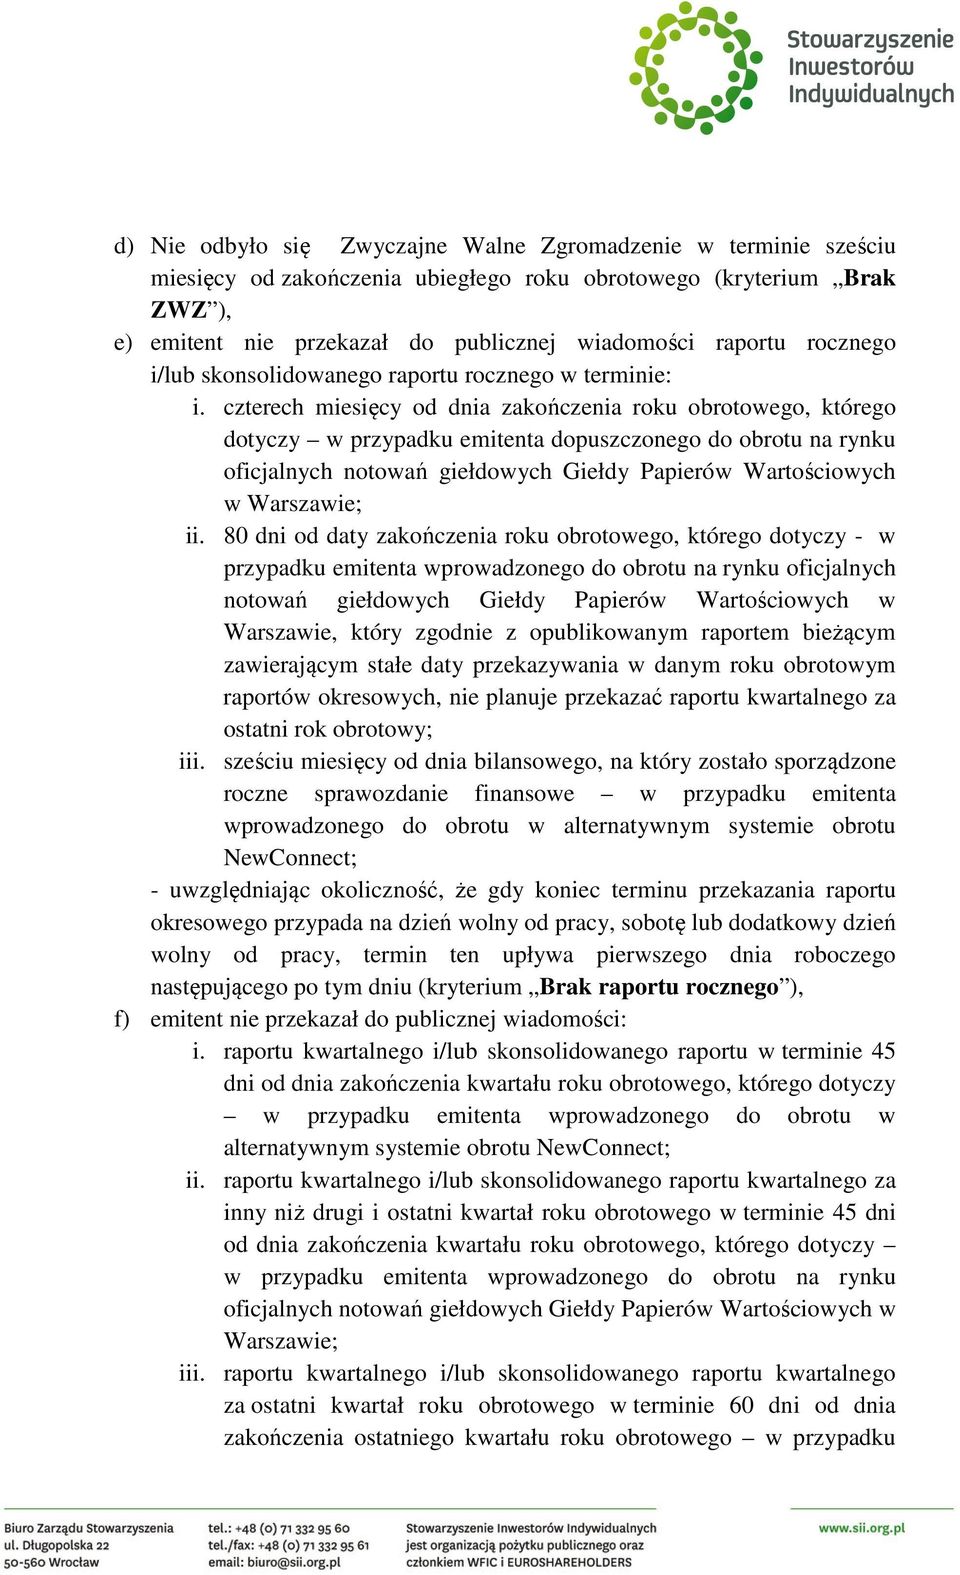 czterech miesięcy od dnia zakończenia roku obrotowego, którego dotyczy w przypadku emitenta dopuszczonego do obrotu na rynku oficjalnych notowań giełdowych Giełdy Papierów Wartościowych w Warszawie;